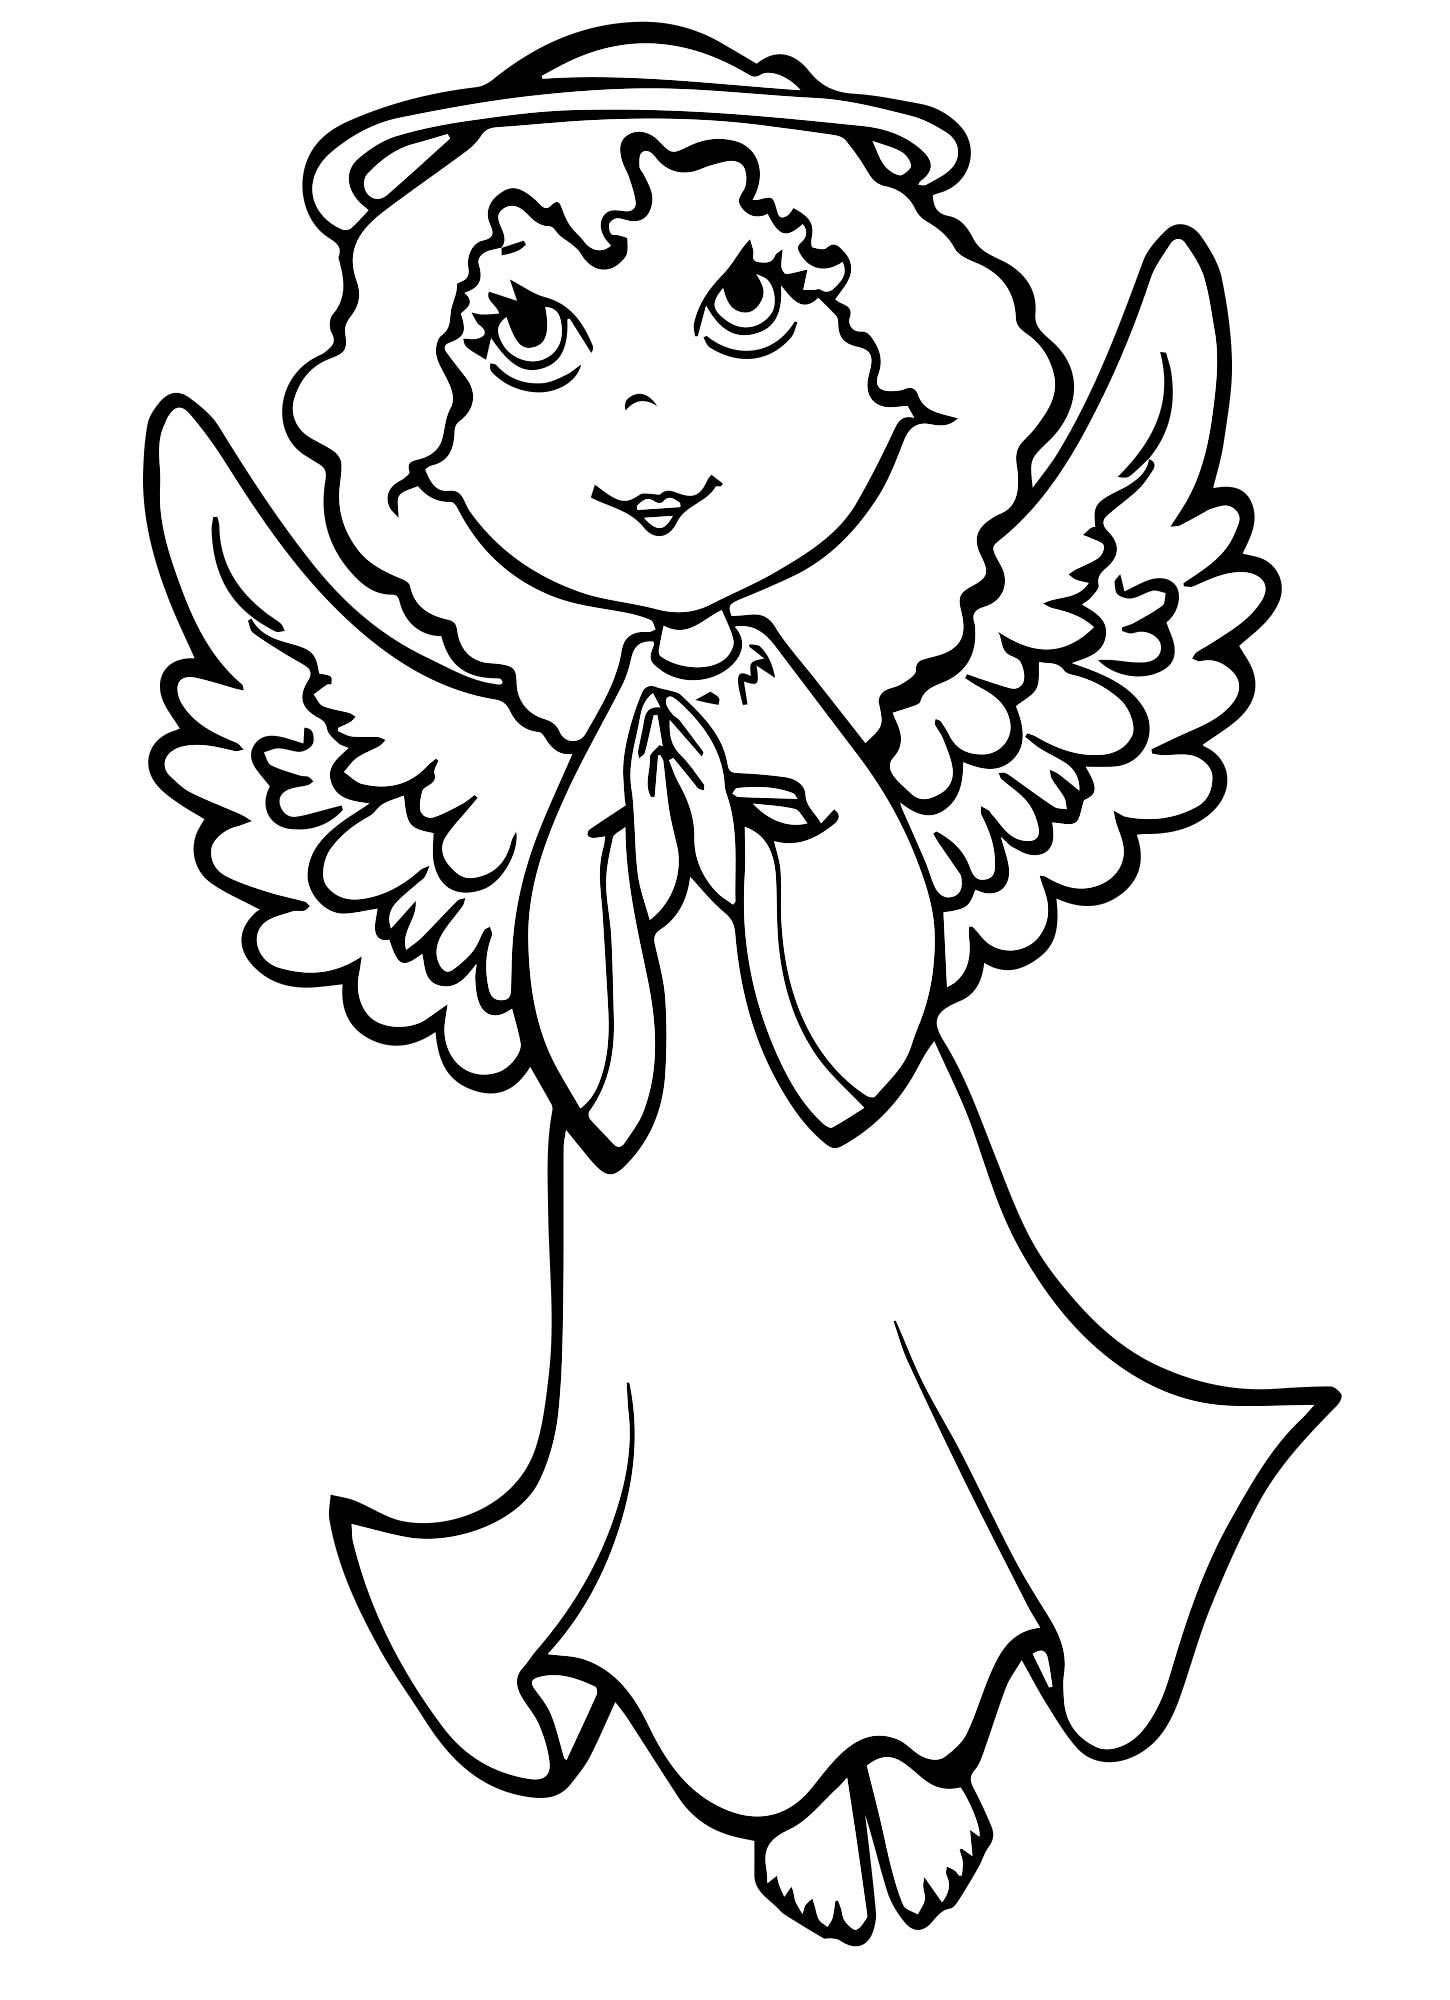 Раскраска ангел: векторные изображения и иллюстрации, которые можно скачать бесплатно | Freepik